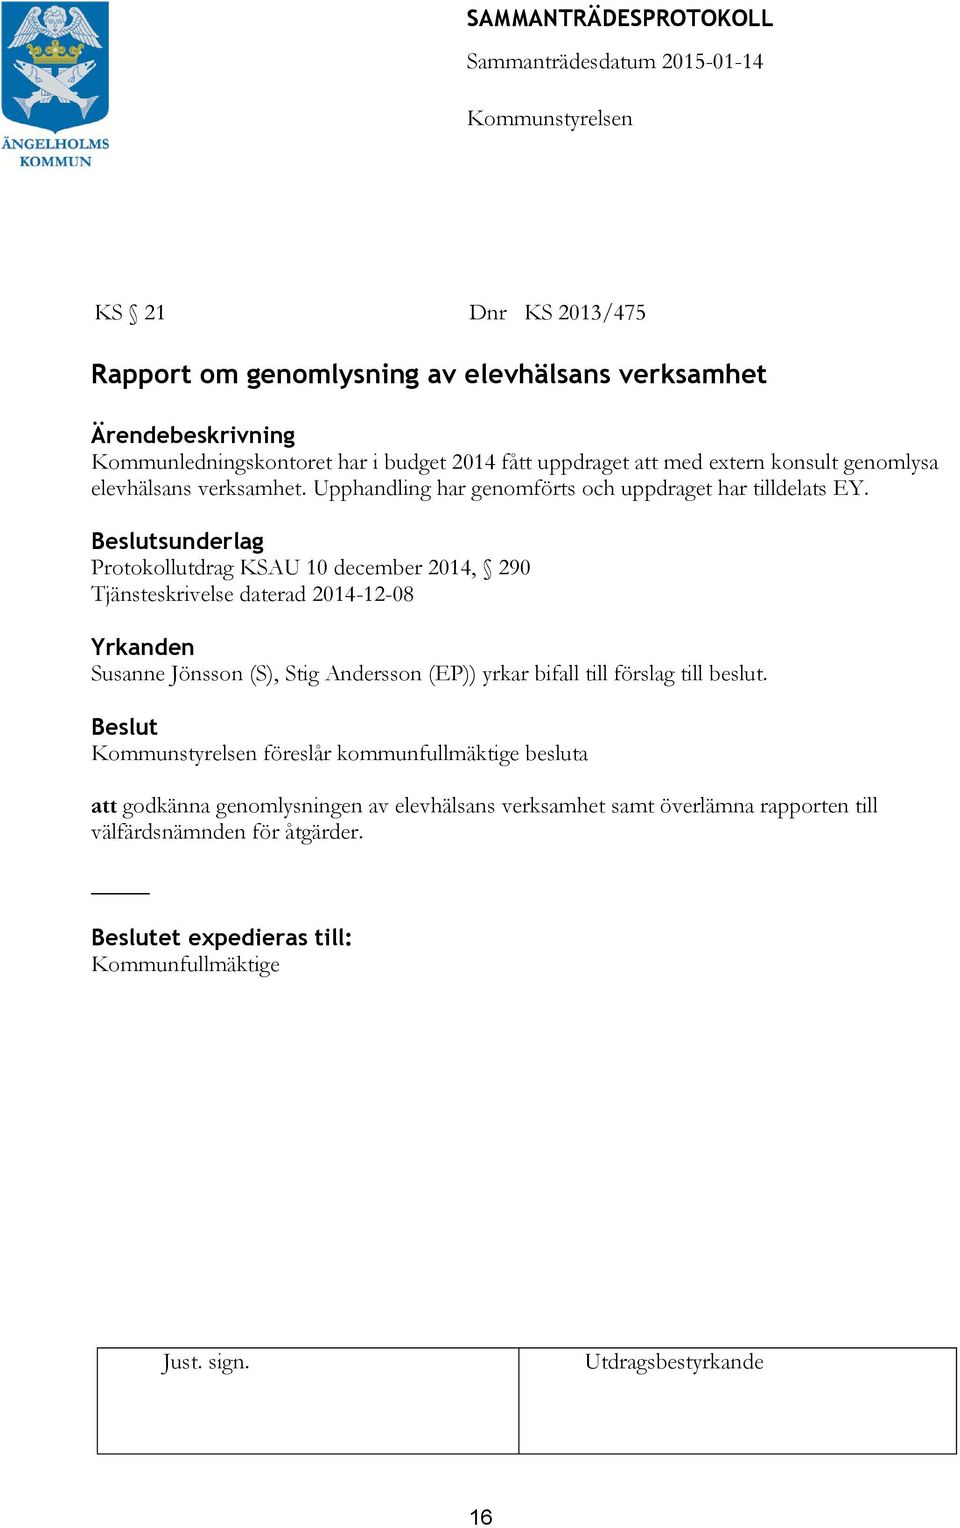 sunderlag Protokollutdrag KSAU 10 december 2014, 290 Tjänsteskrivelse daterad 2014-12-08 Susanne Jönsson (S), Stig Andersson (EP)) yrkar bifall till